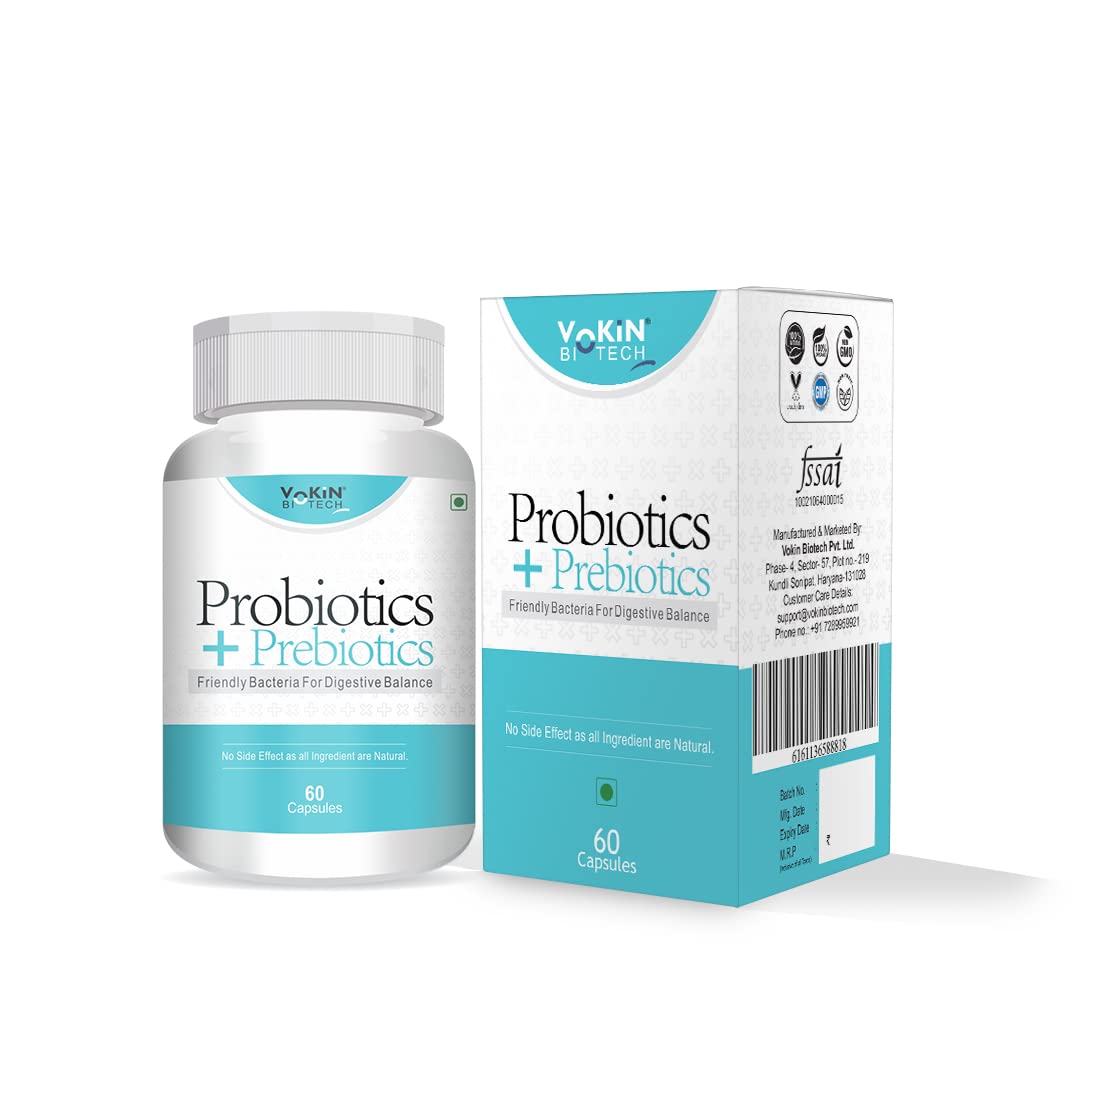 Vokin Probiotics+ Prebiotics 50 Billion...